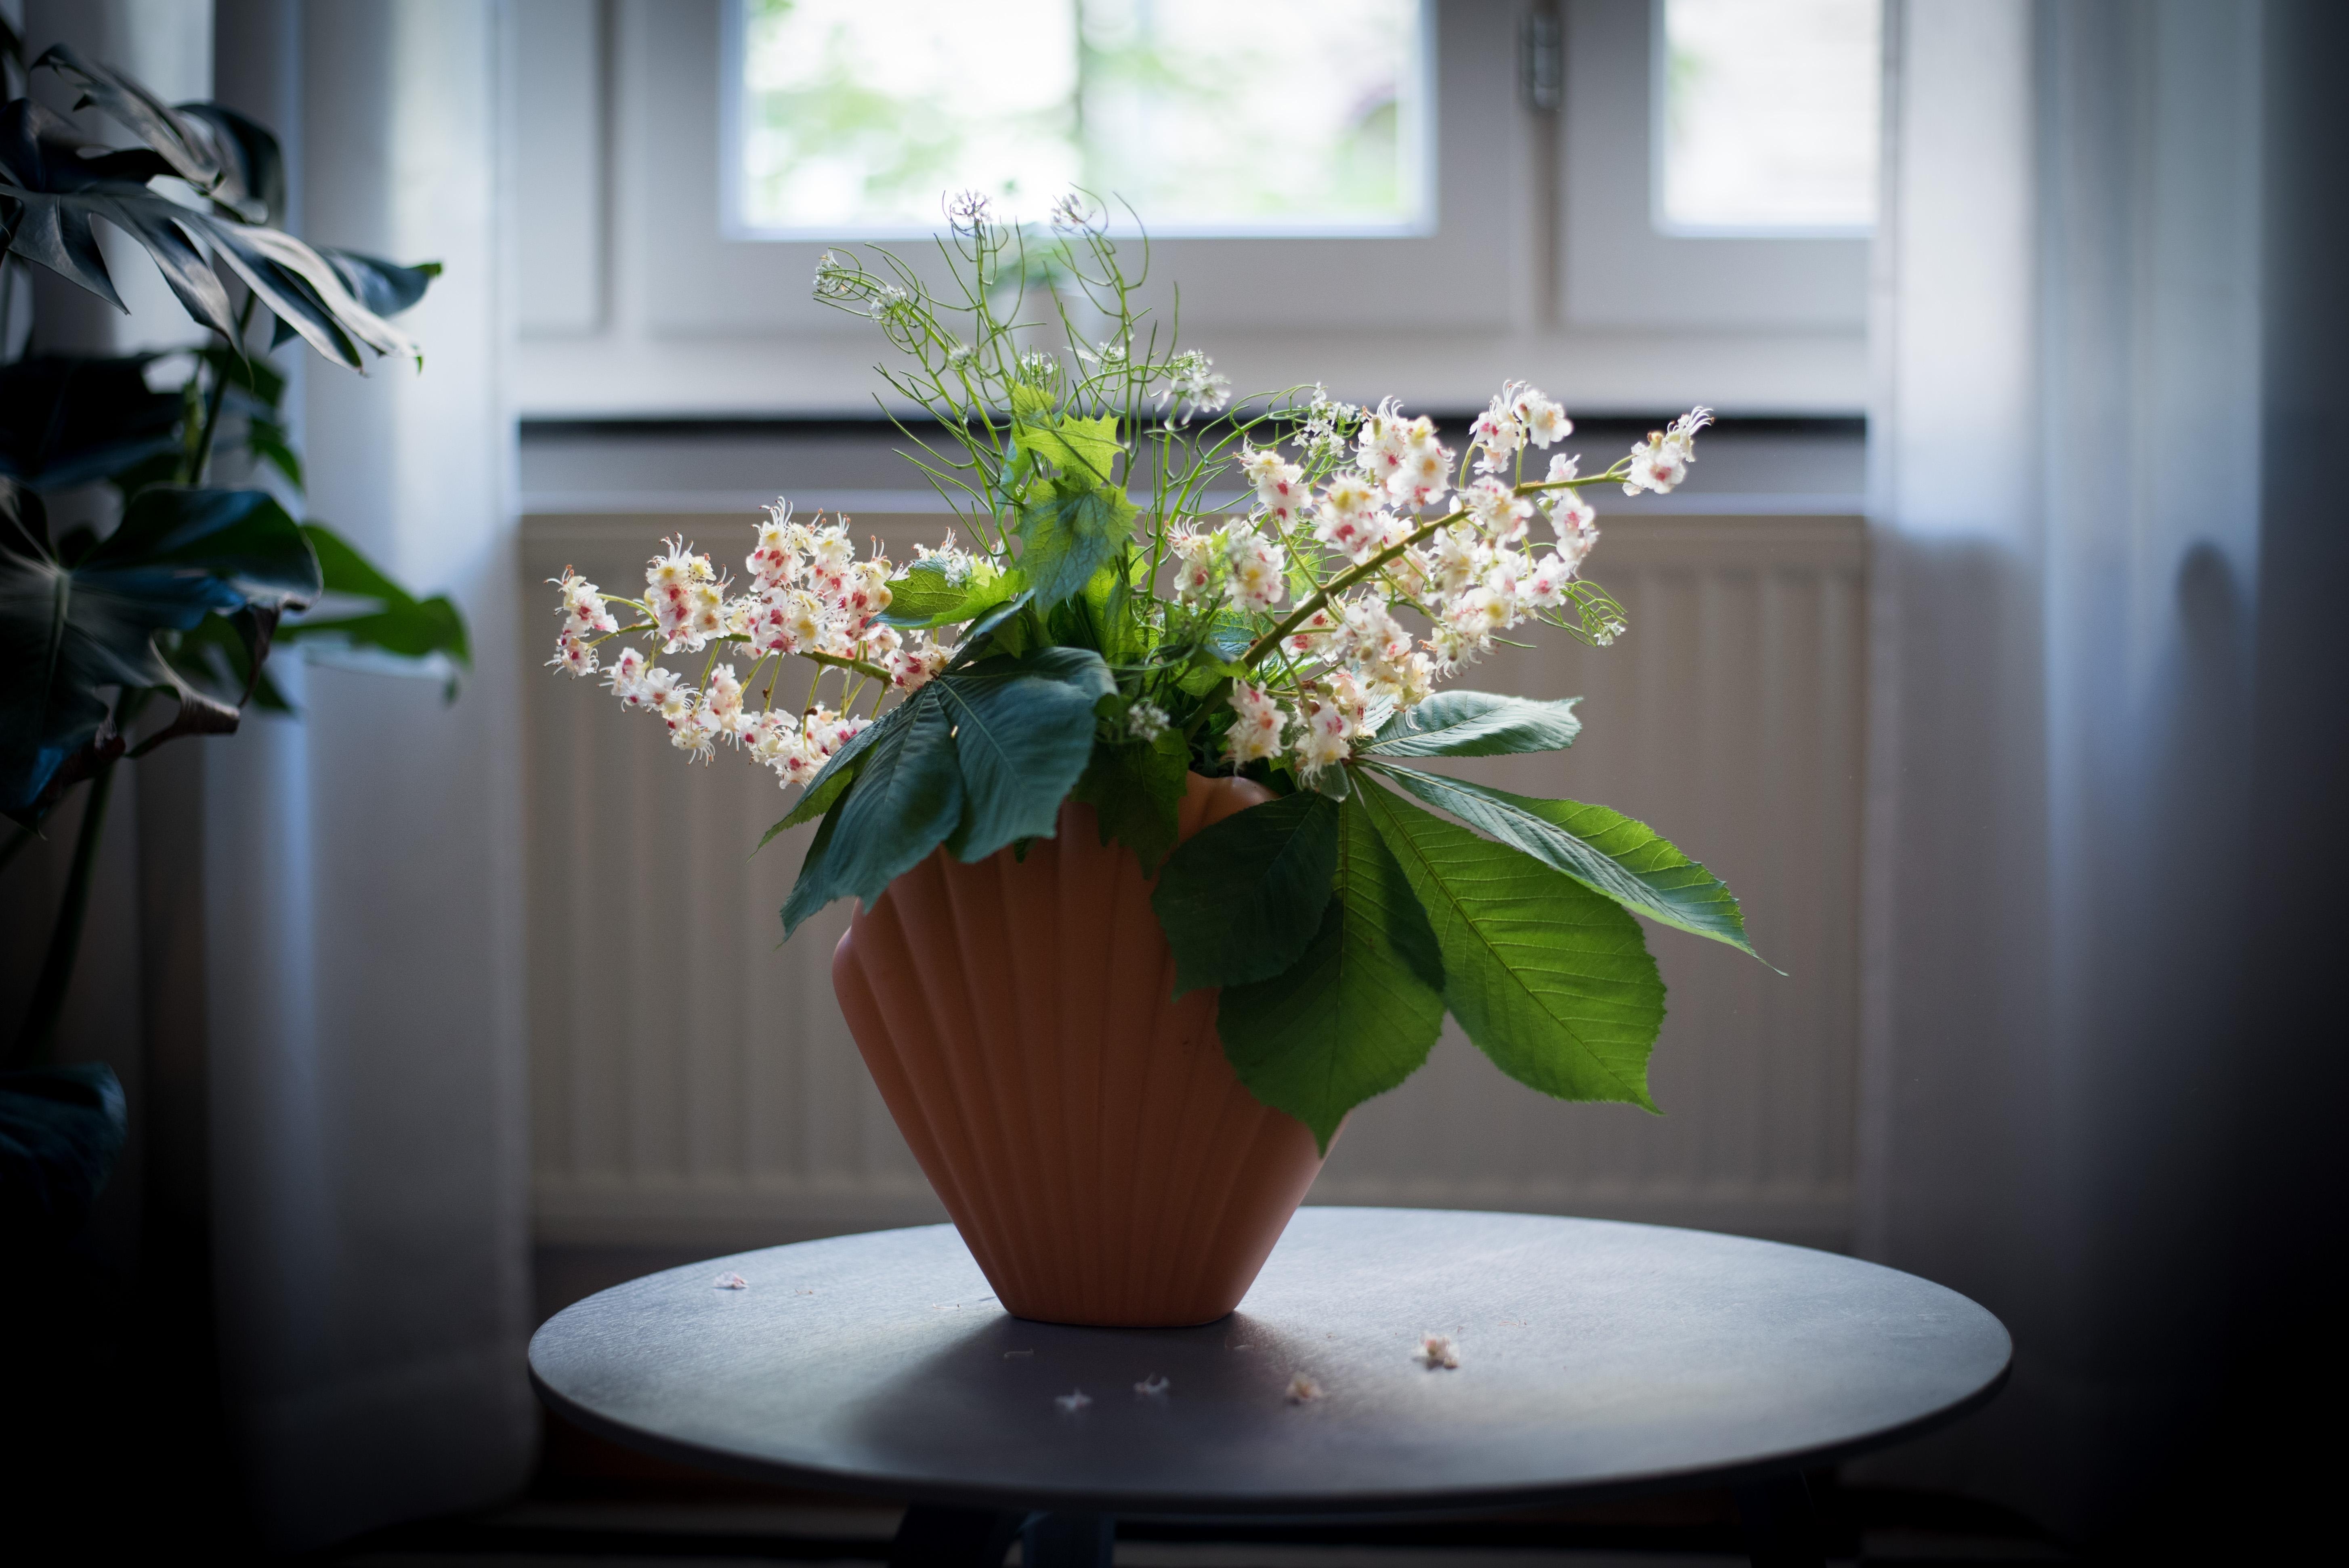 Freitagsblumen - kommt gut ins Wochenende! #freshflowers #interiordeco #wildflowers #interiorstyle #deco #vase